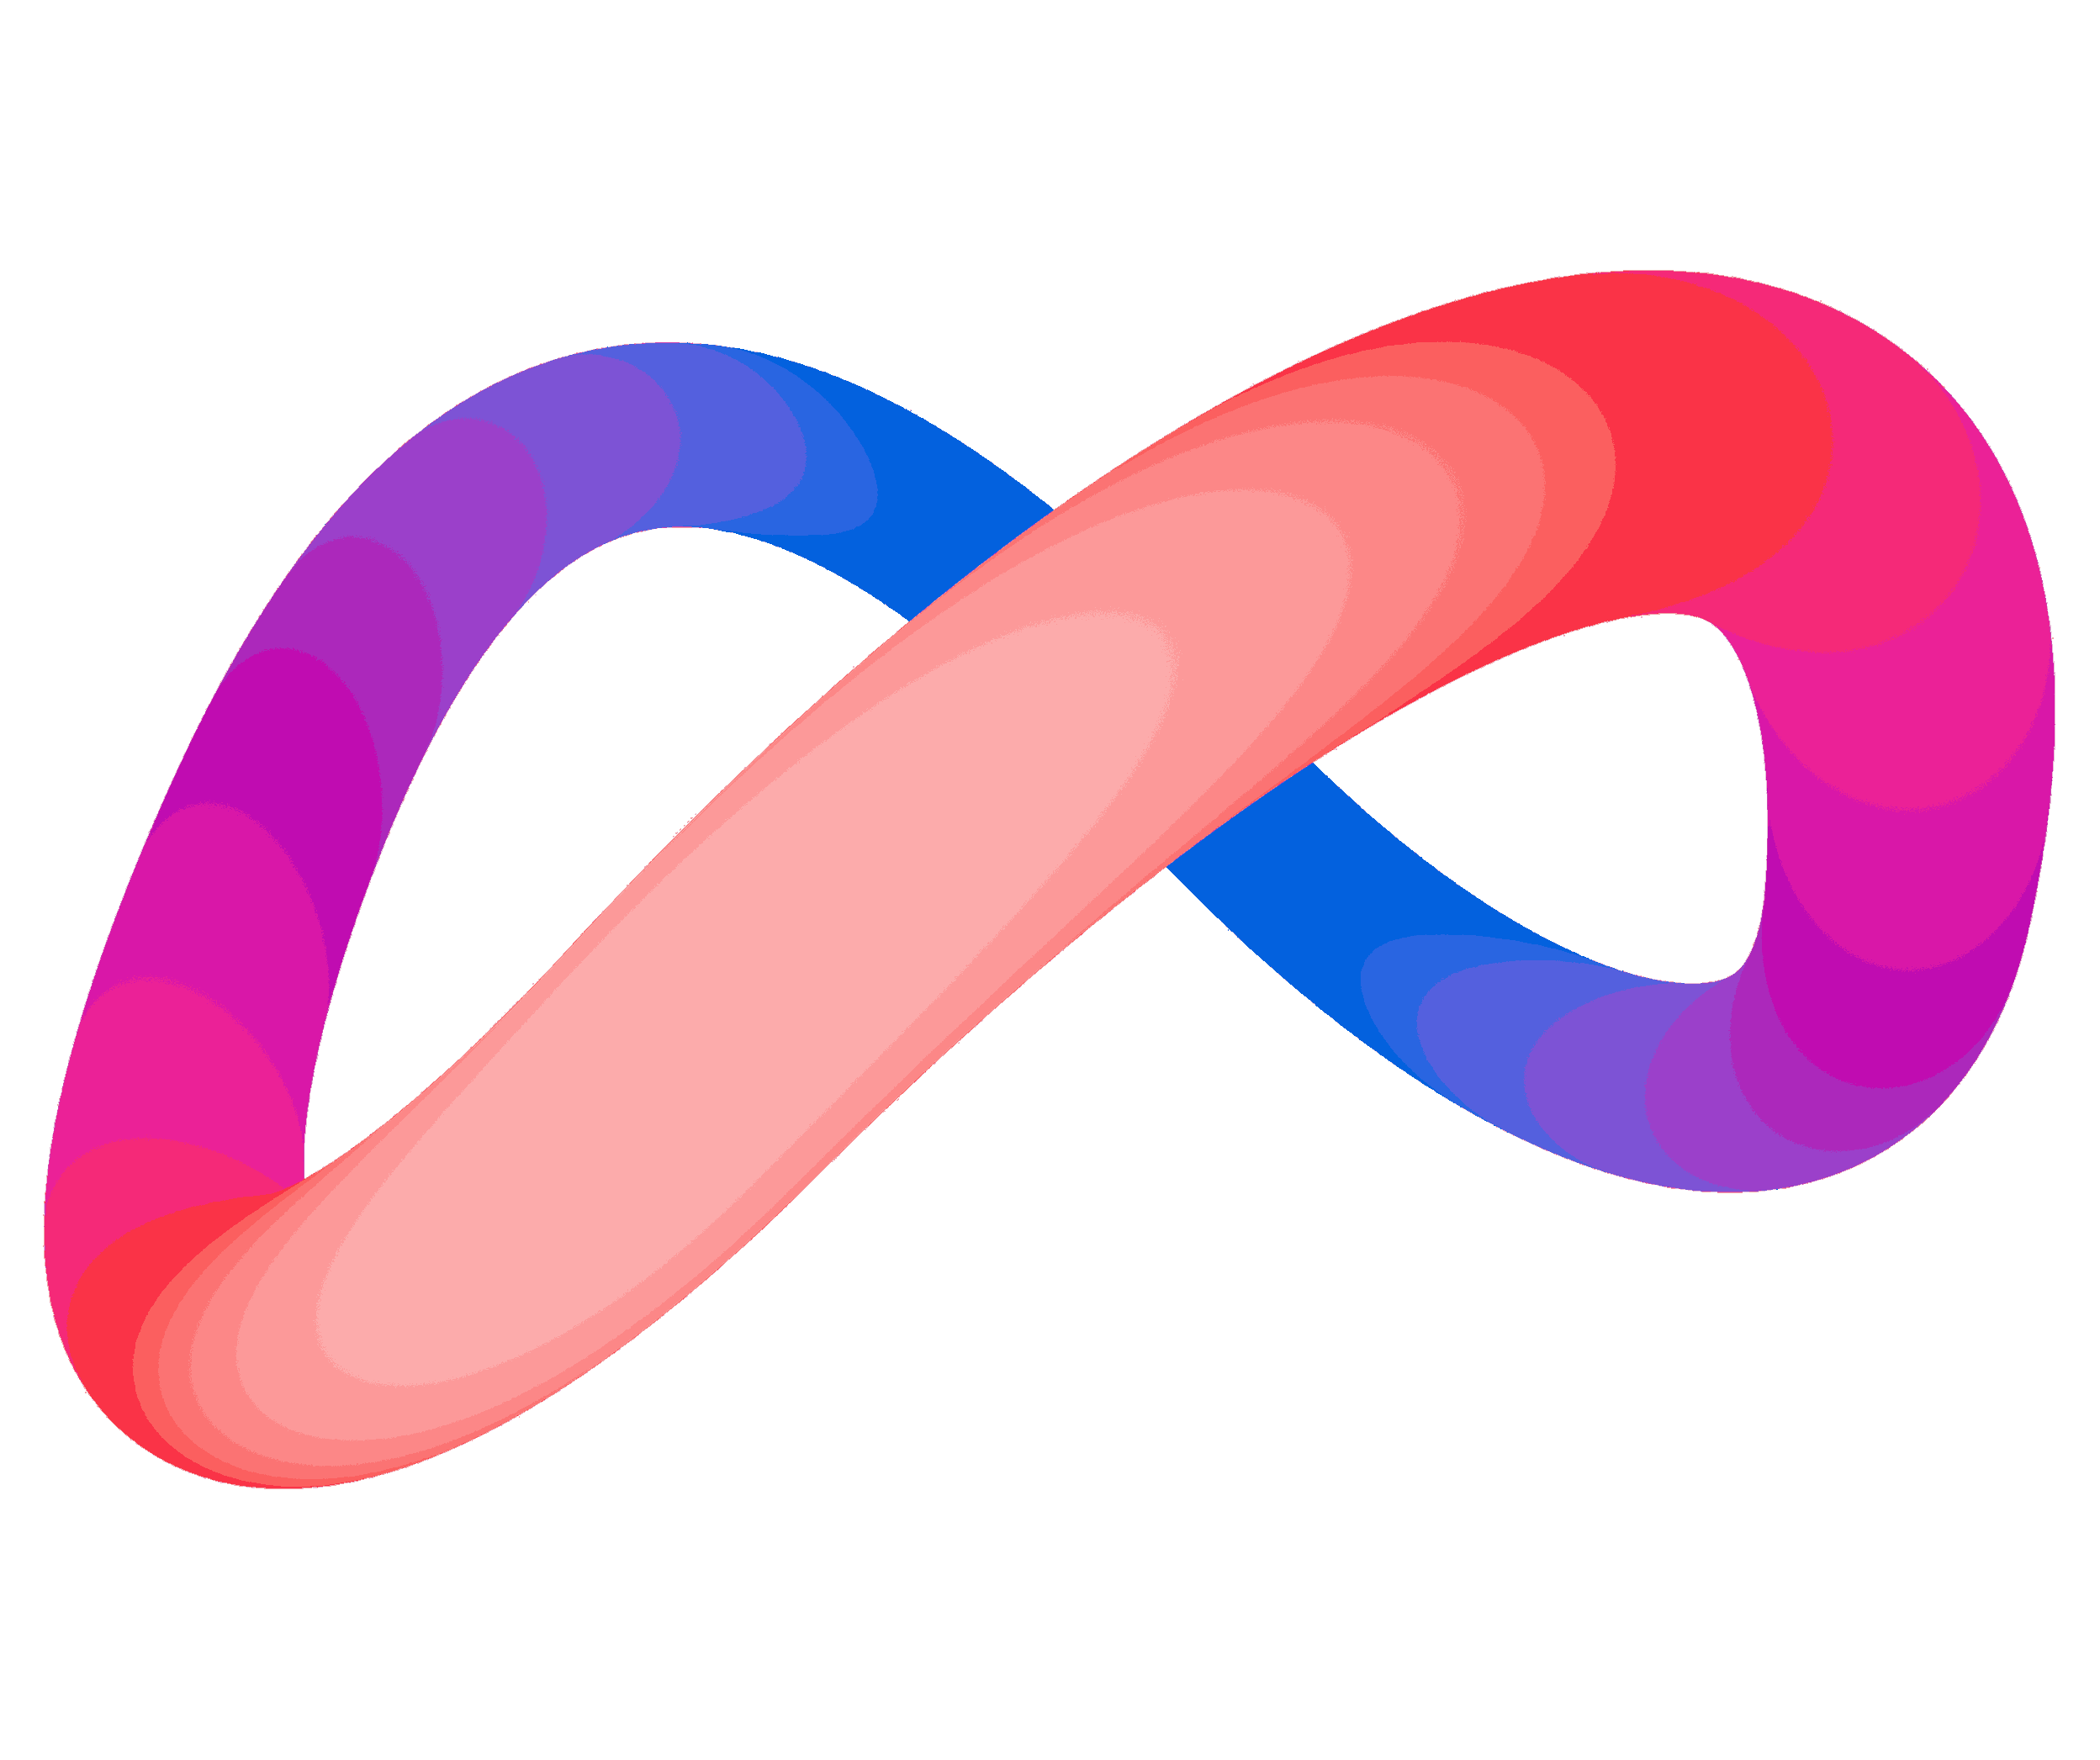 spiral_logo